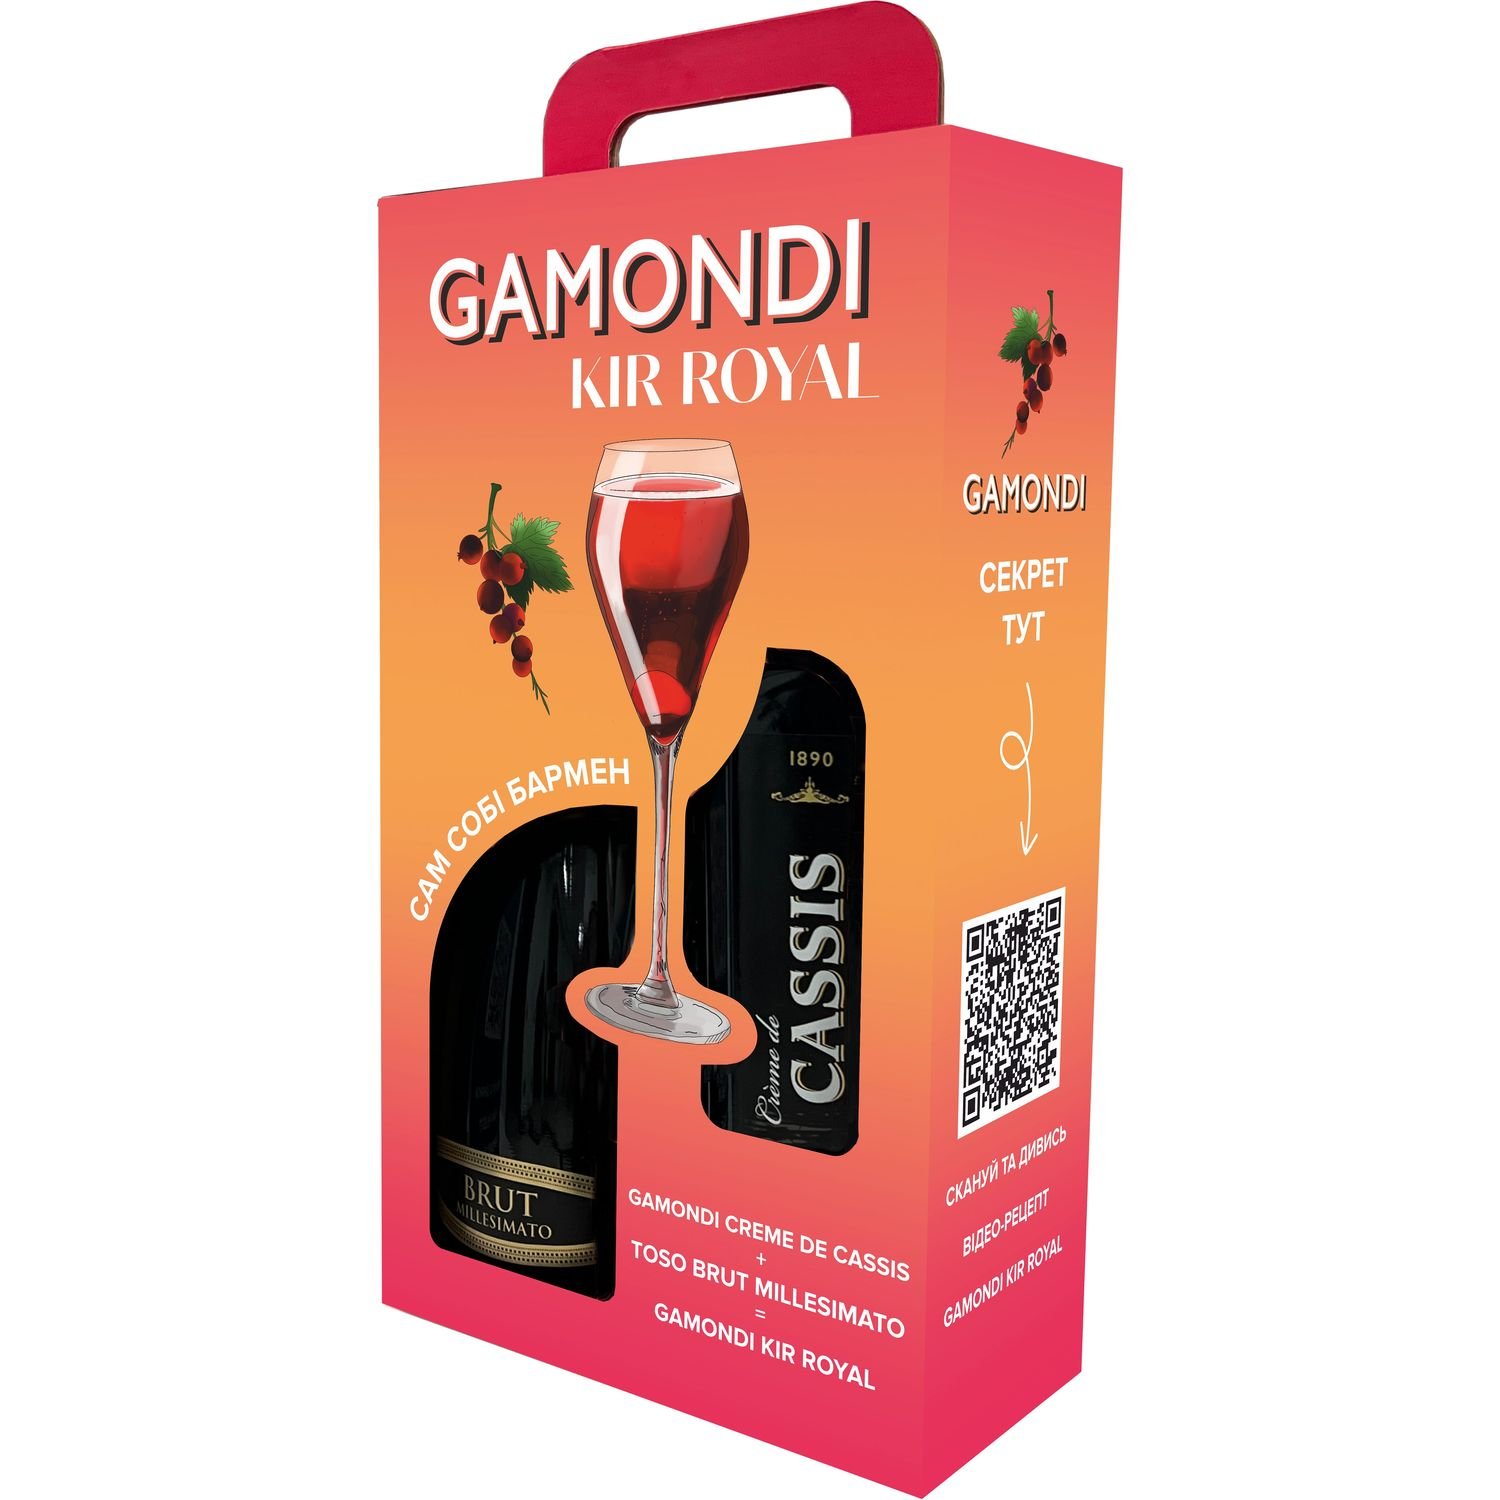 Набор Gamondi Kir Royal: Игристое вино Toso Brut Millesimato, 0,75 л + Ликер Creme de Cassis, 15%, 1 л, в подарочной упаковке - фото 1